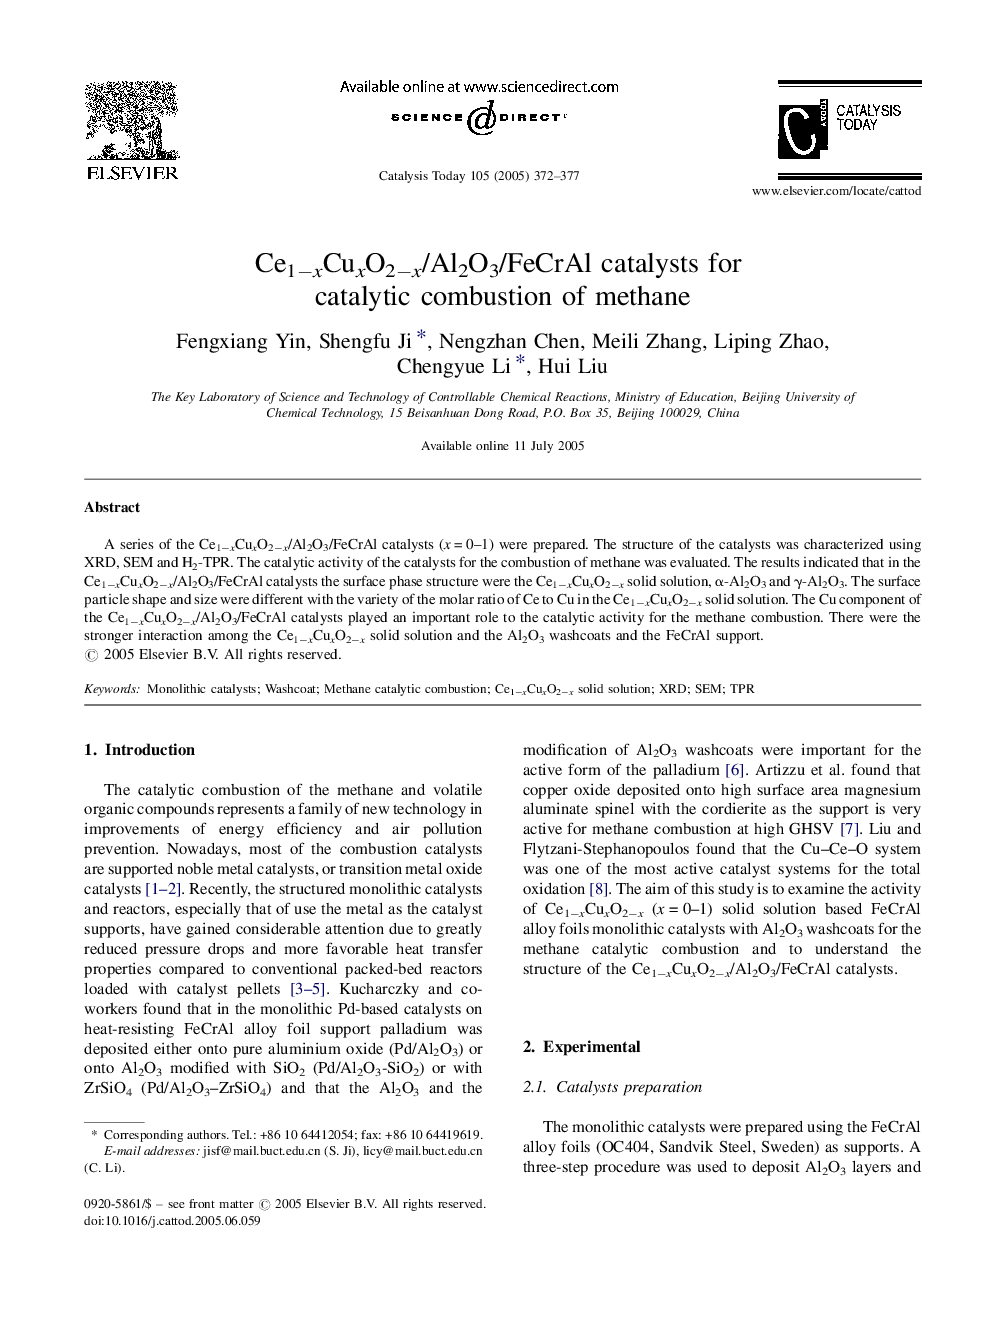 Ce1âxCuxO2âx/Al2O3/FeCrAl catalysts for catalytic combustion of methane